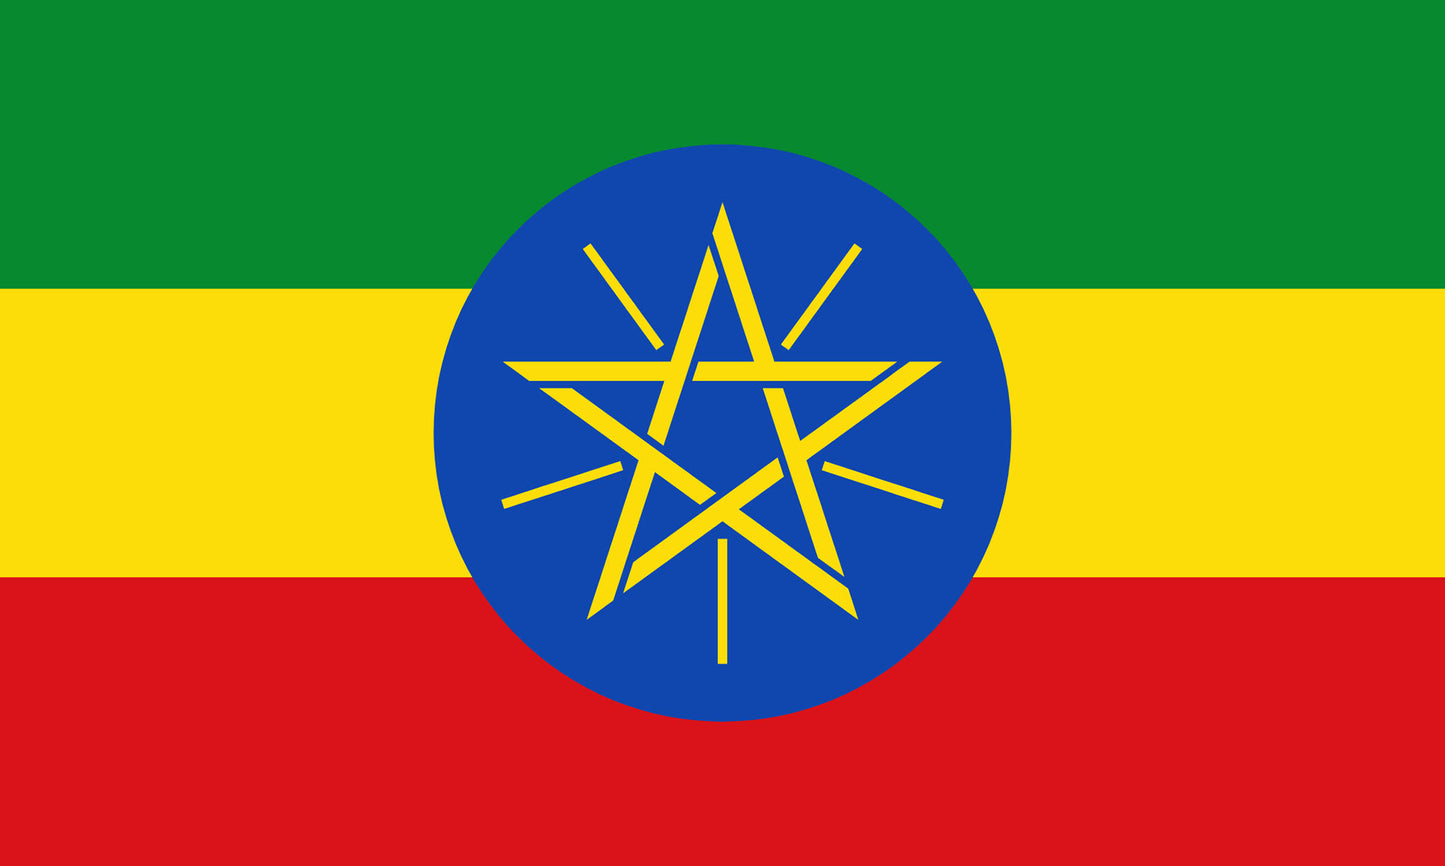 INR-ETH-15x22-2 - государственный флаг Эфиопии, размер: 15х22 см, материал: атлас. Печать с двух сторон. Подставка и шток приобретаются отдельно